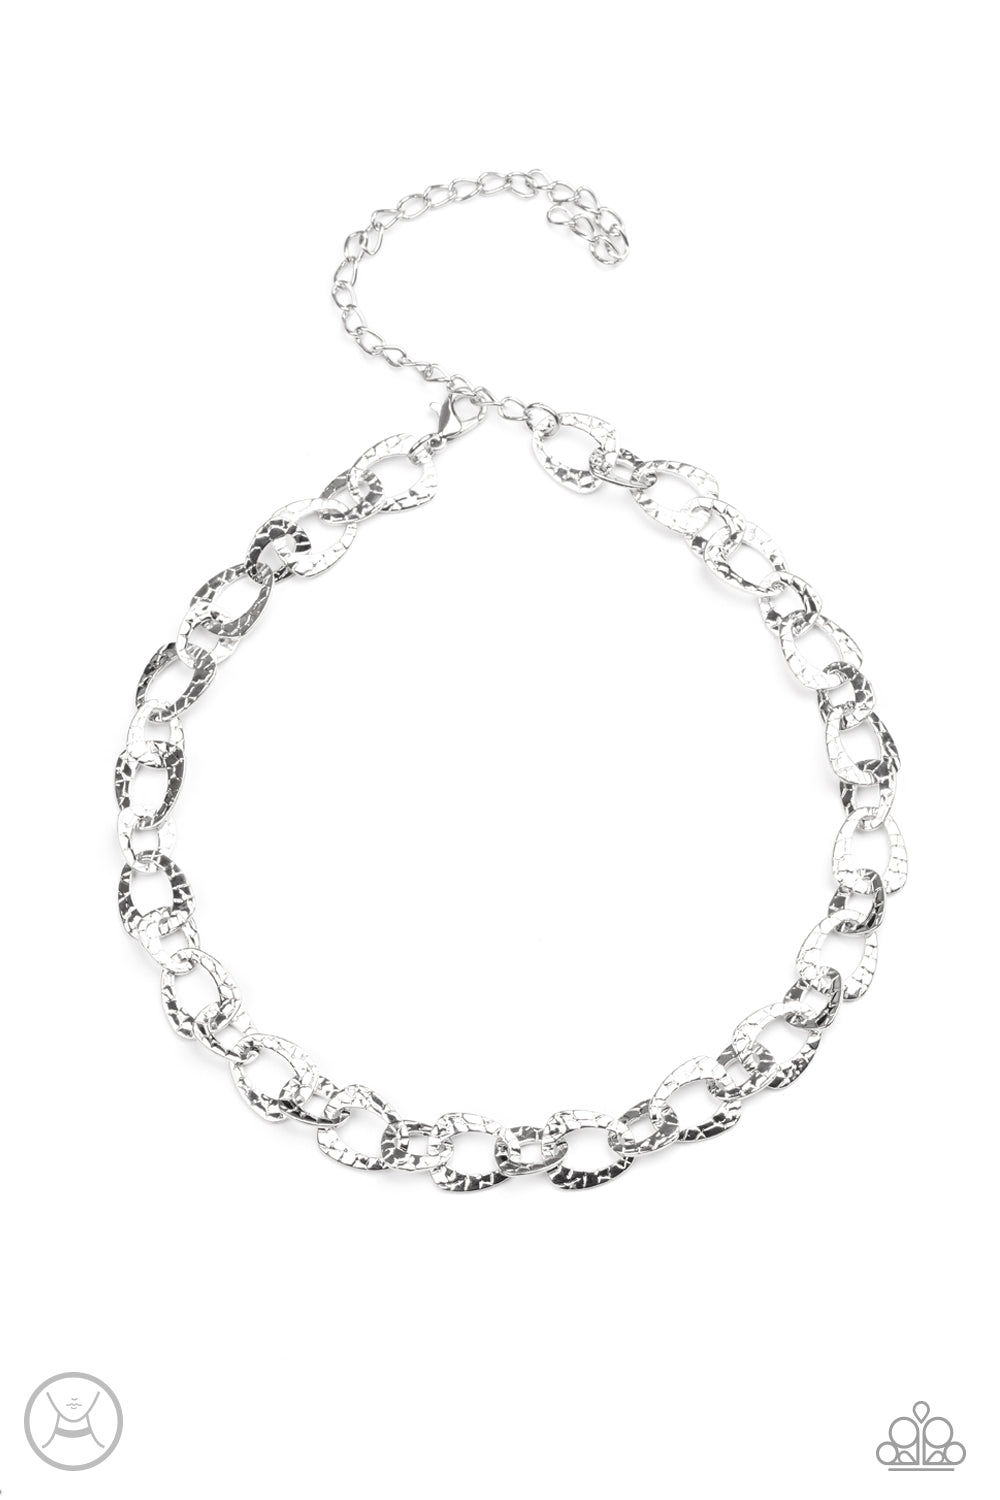 Paparazzi Urban Safari - Silver Necklace Choker - A Finishing Touch Jewelry